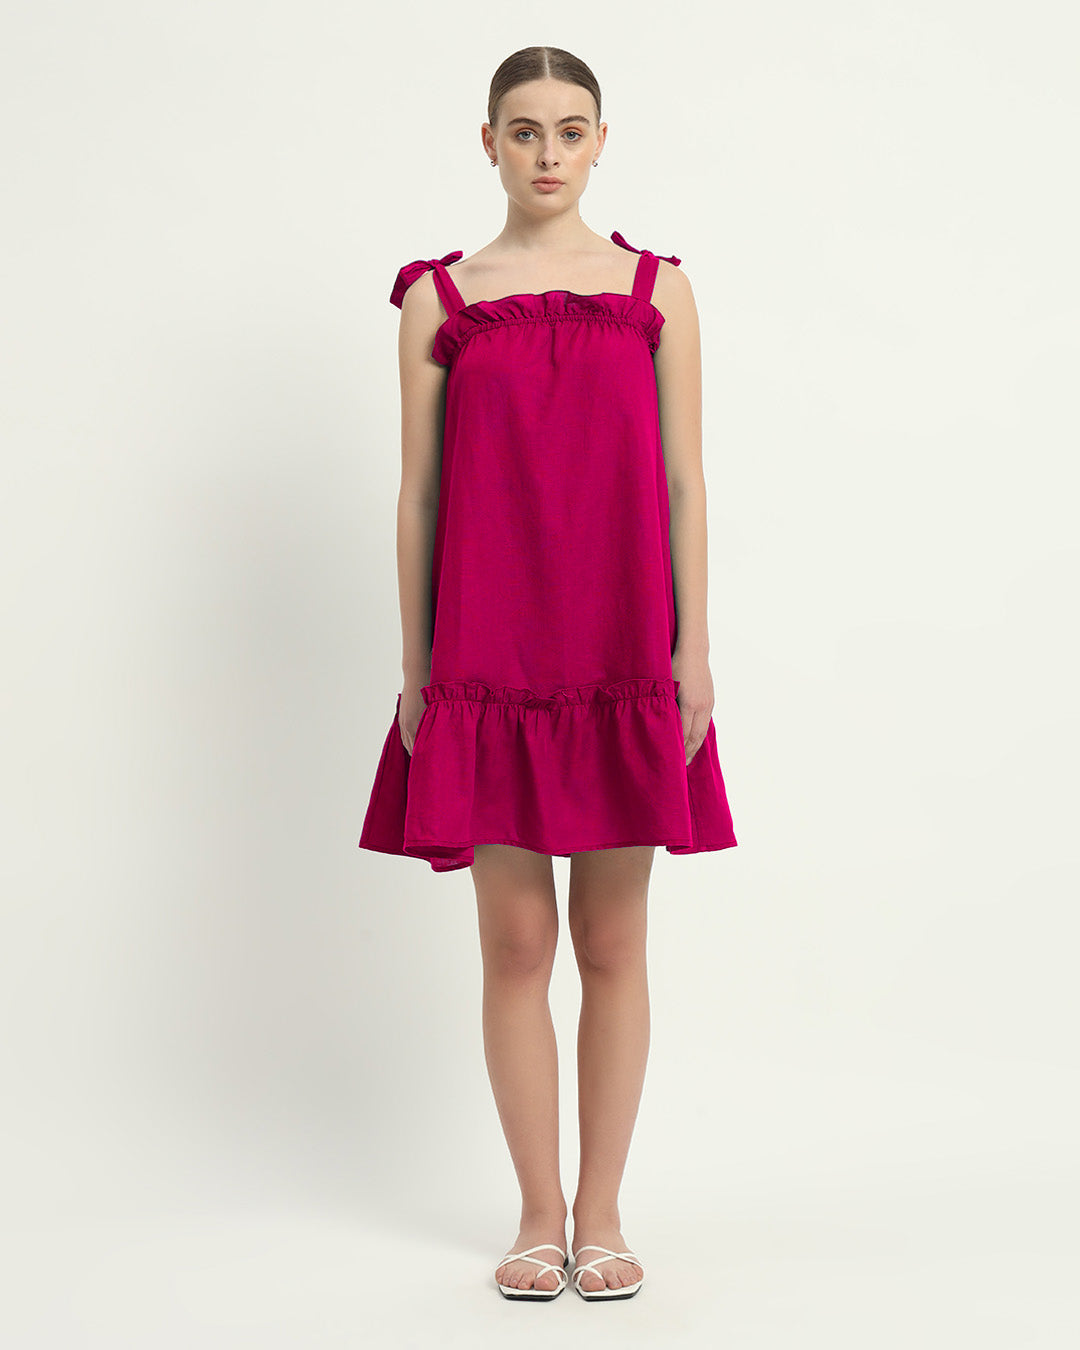 The Berry Amalfi Cotton Dress